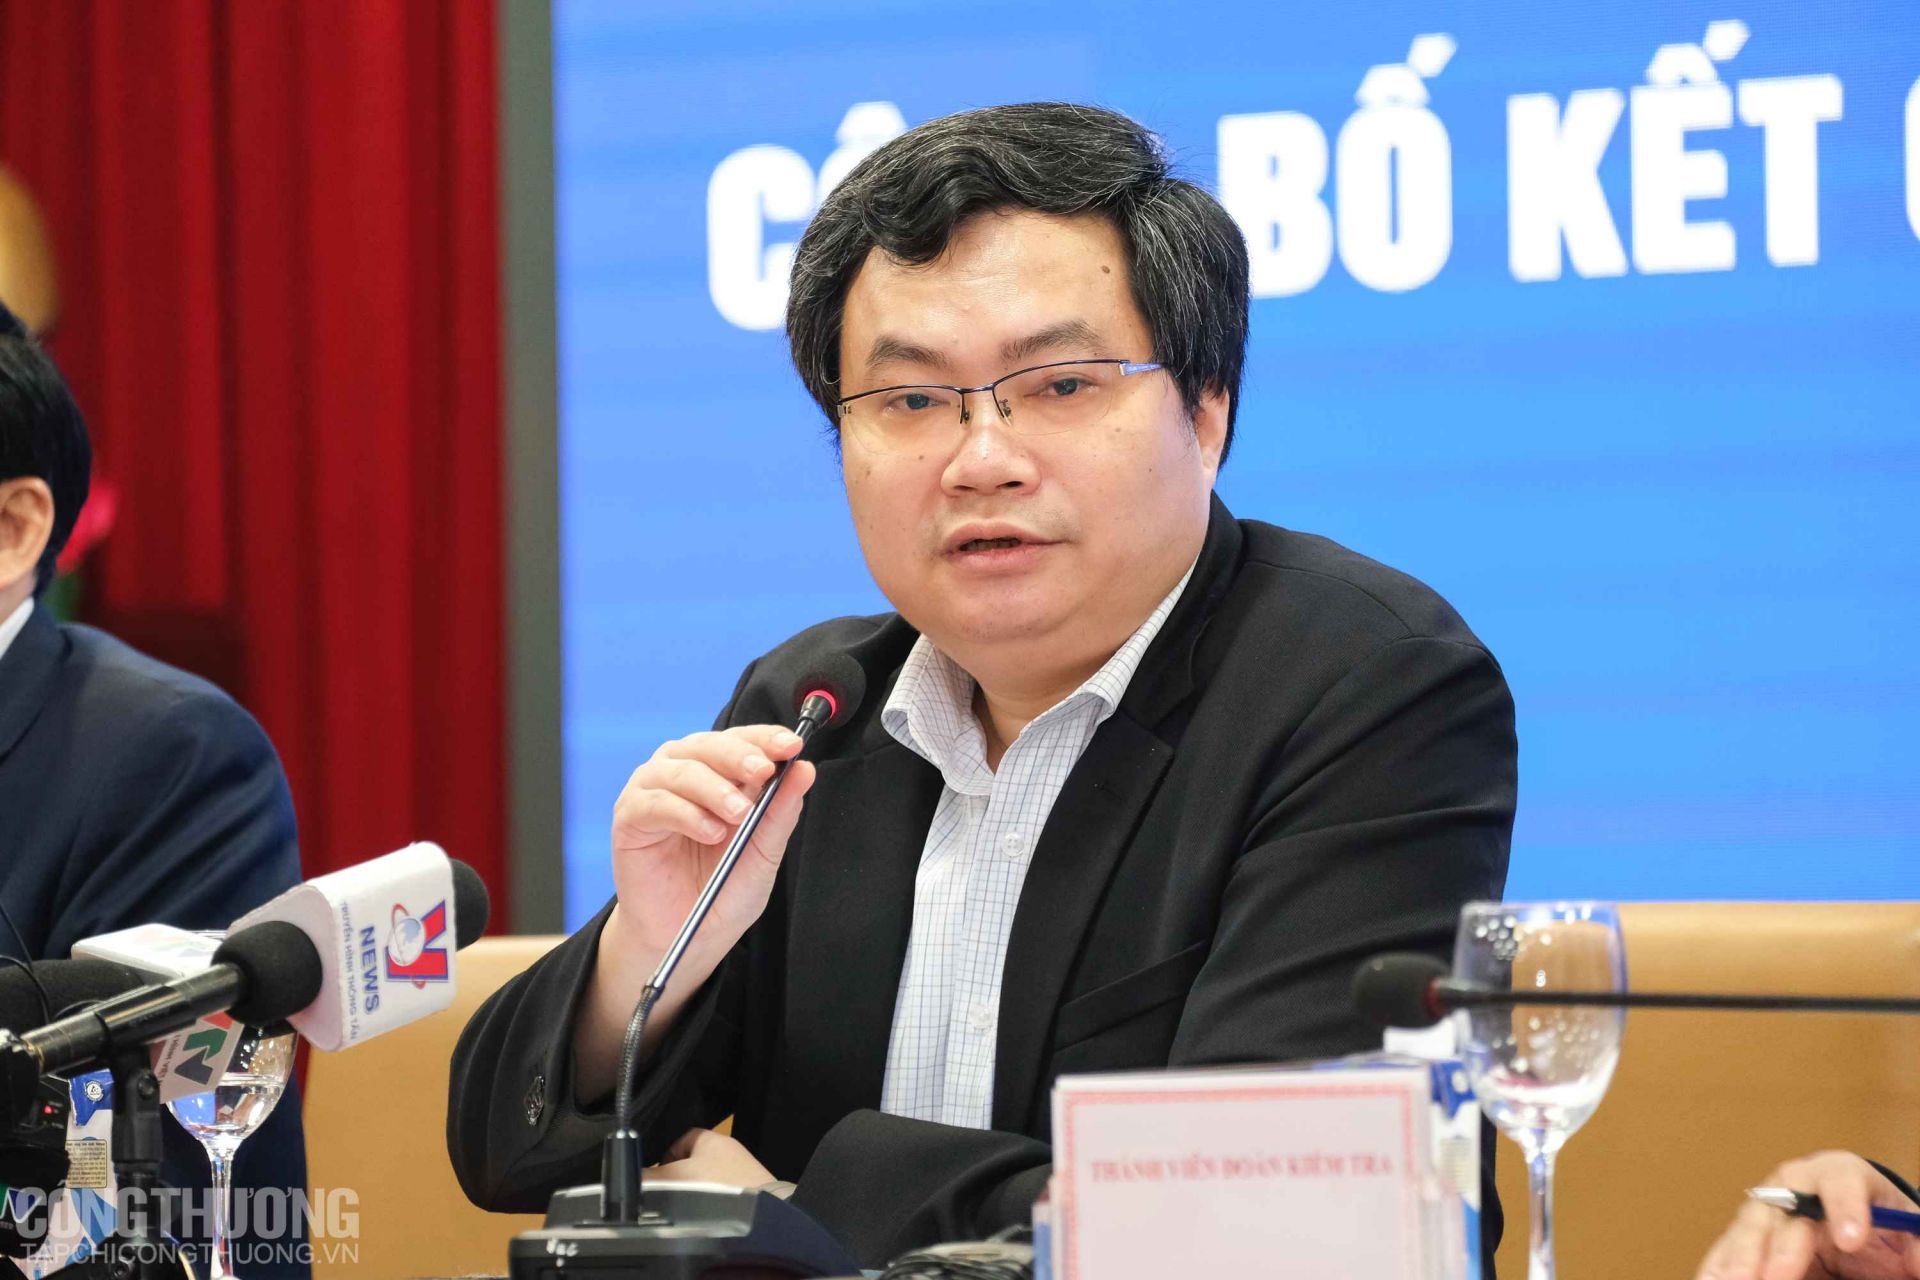 Ông Trần Việt Hòa - Cục trưởng Cục Điều tiết điện lực, Bộ Công Thương cho biết hiện vẫn còn 33 nhà máy điện chuyển tiếp với tổng công suất 1.581 MW chưa gửi hồ sơ đàm phán (chiếm tỷ lệ khoảng 33%)